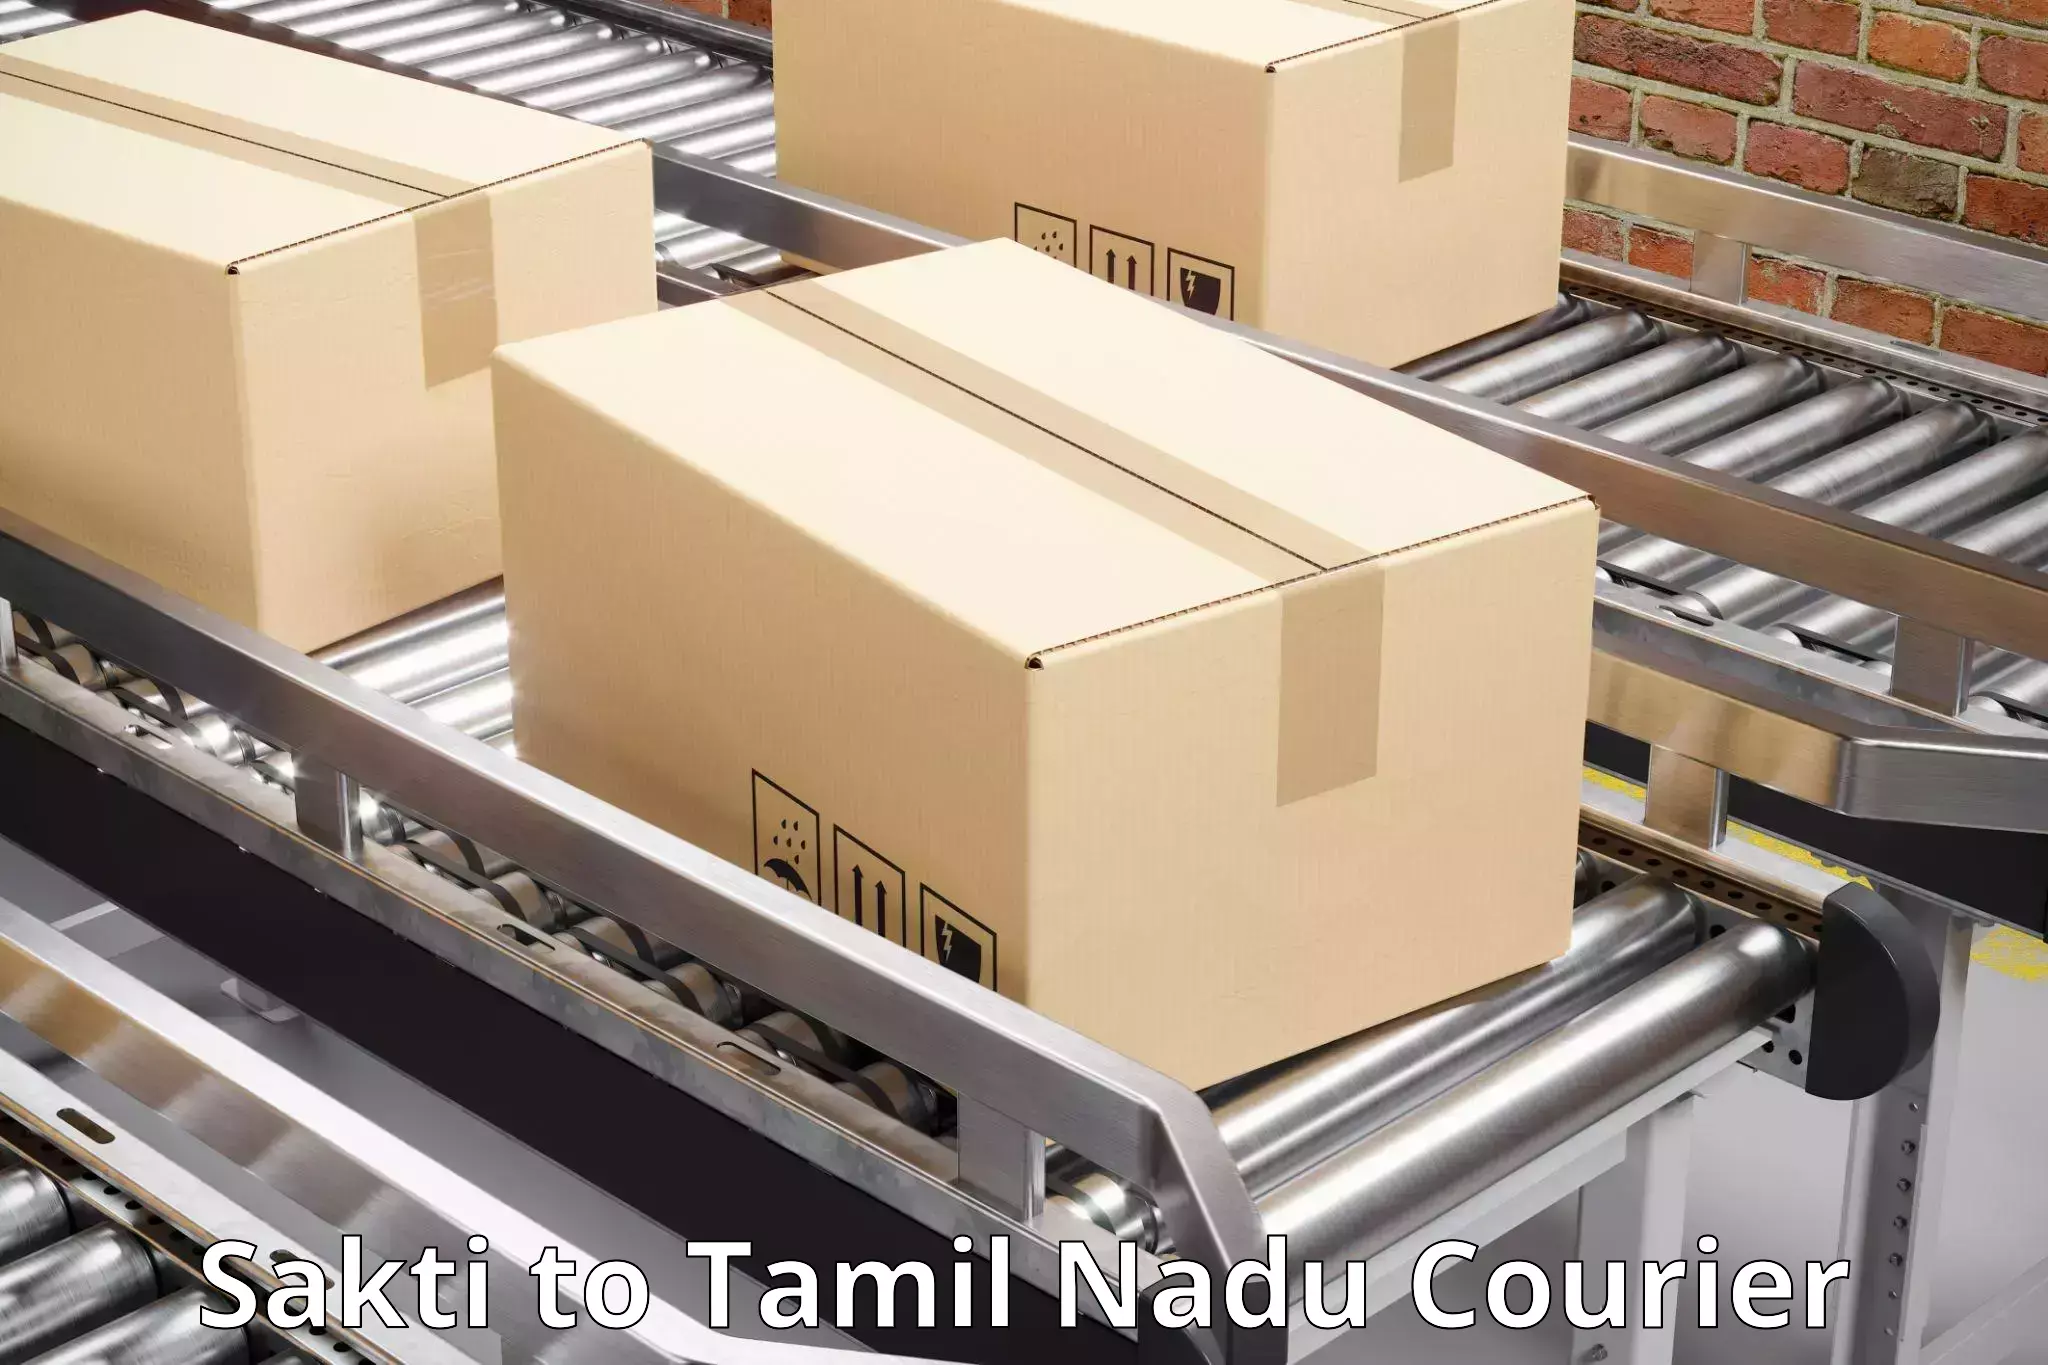 Customer-centric shipping Sakti to Sankarankoil